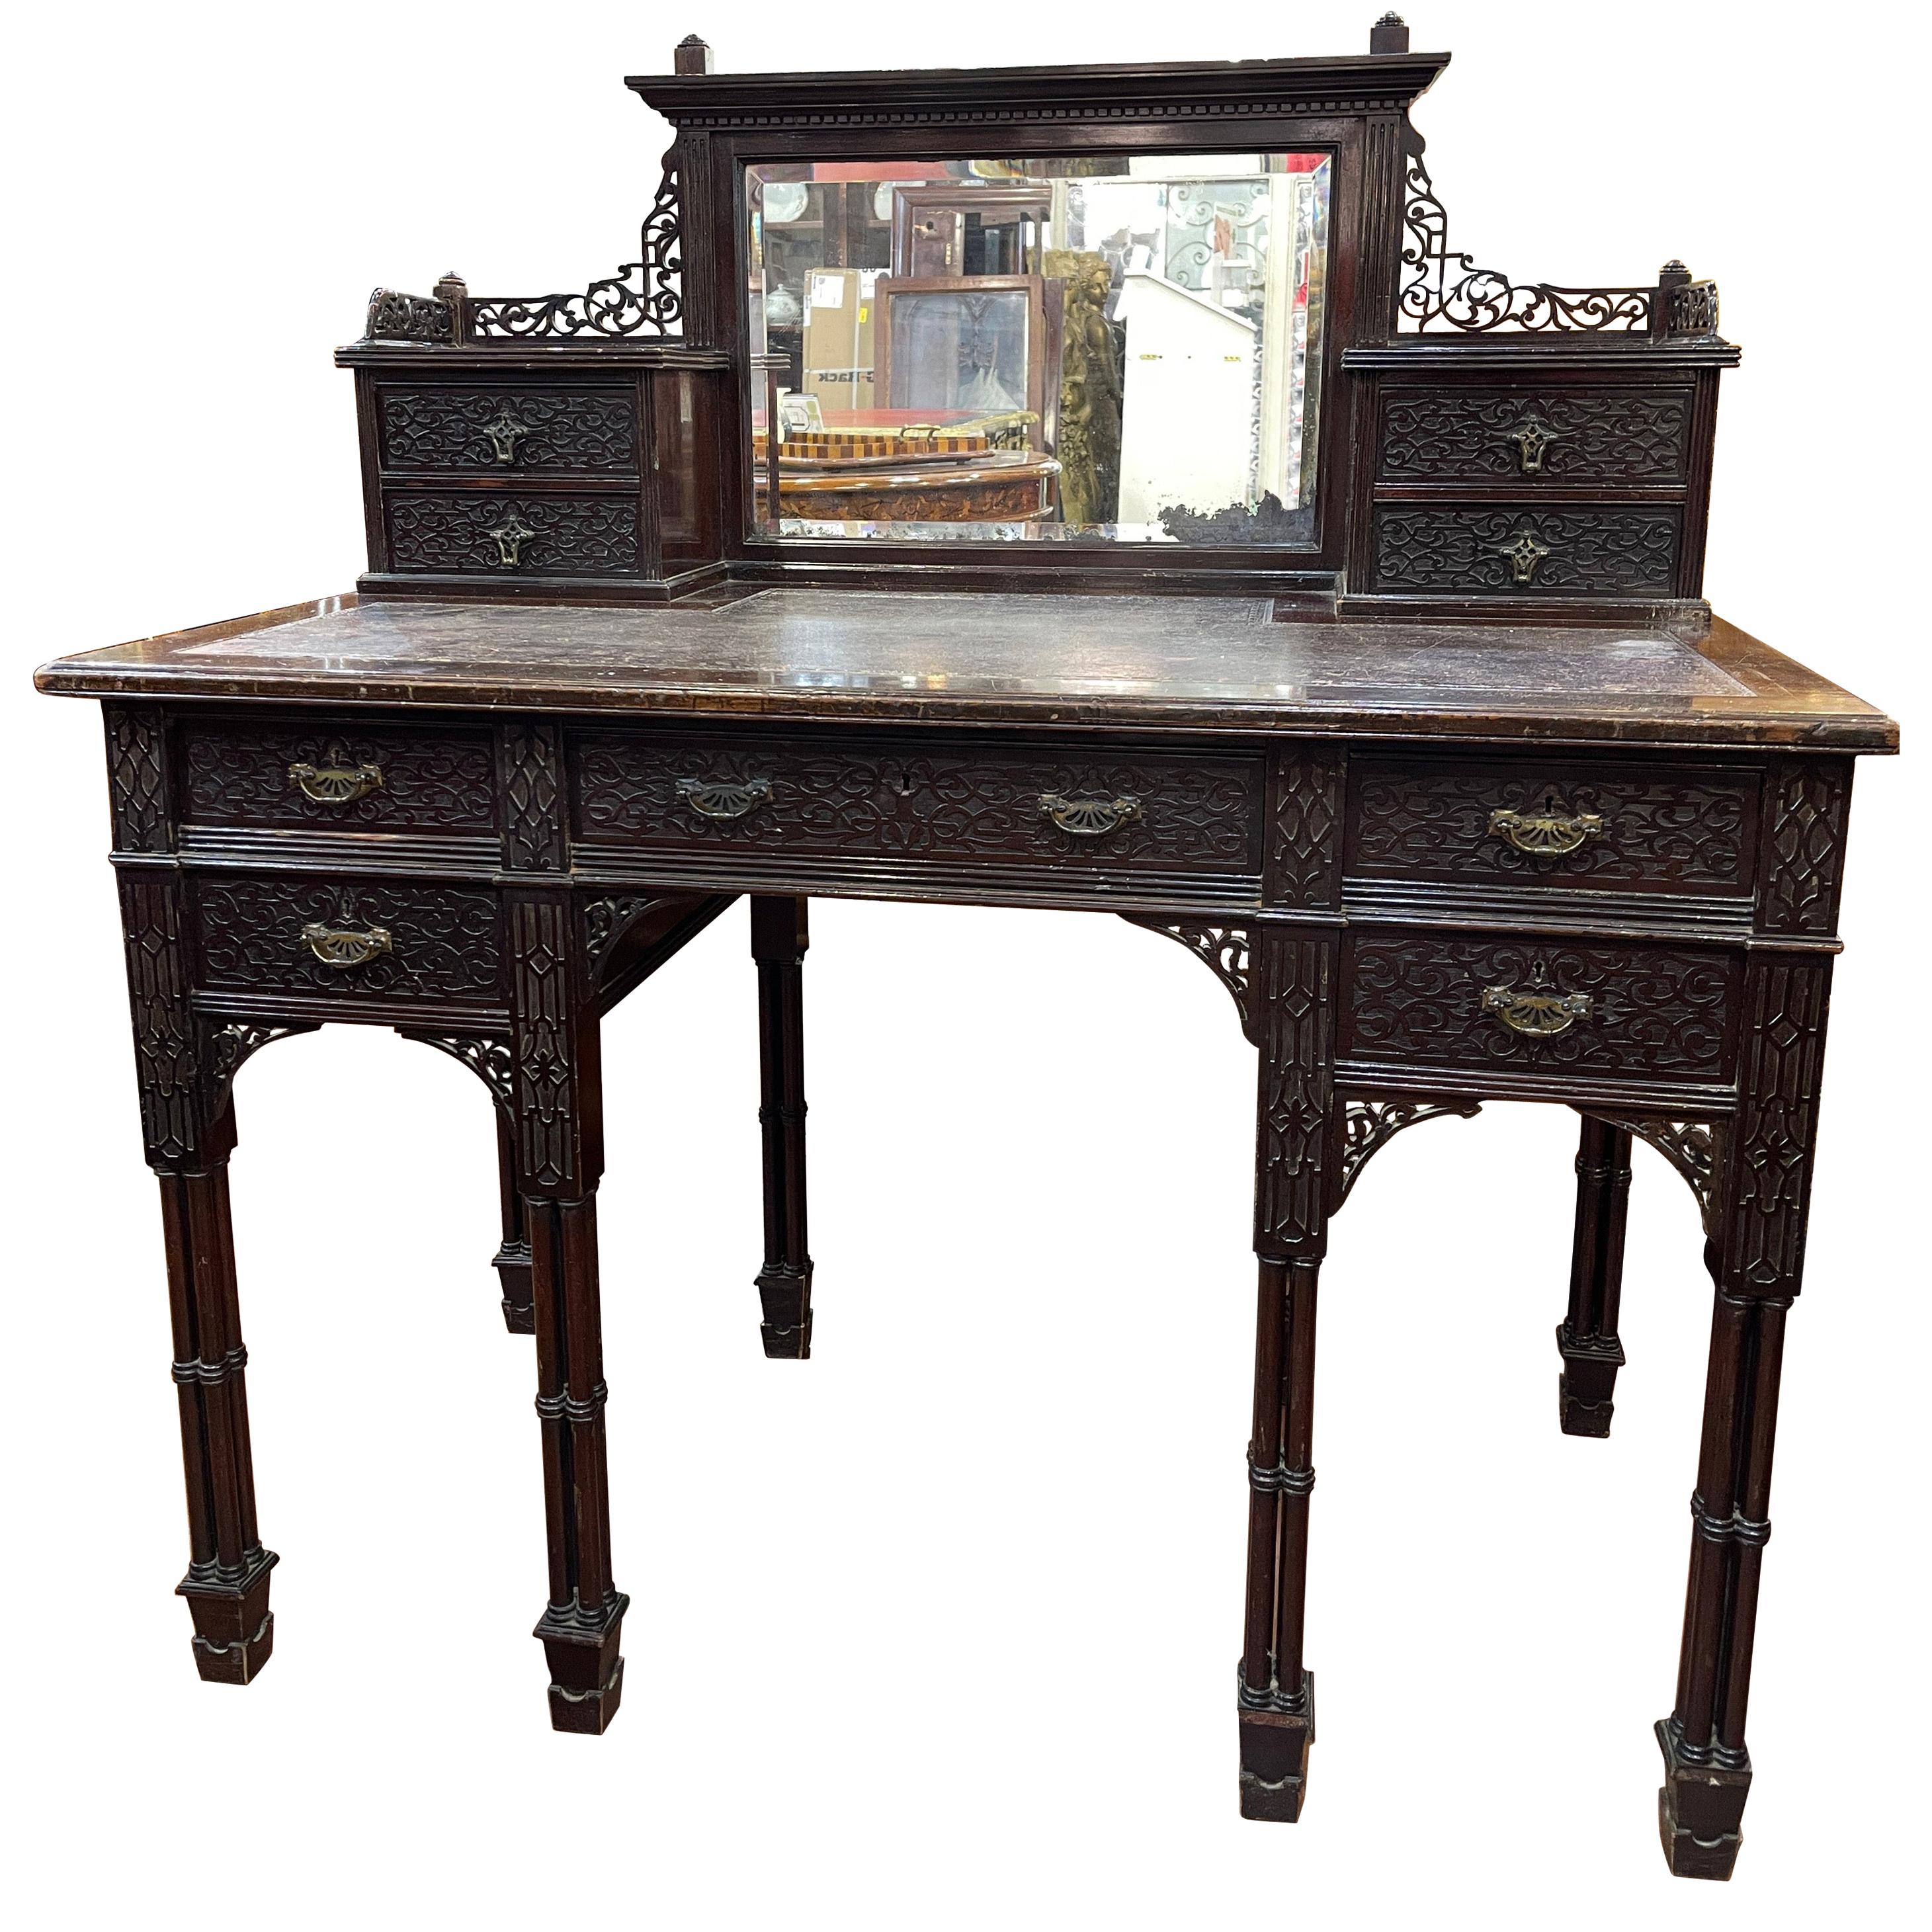 Spätviktorianischer Mahagoni-Schreibtisch aus dem 19. Jahrhundert, signiert Edwards & Roberts 1880